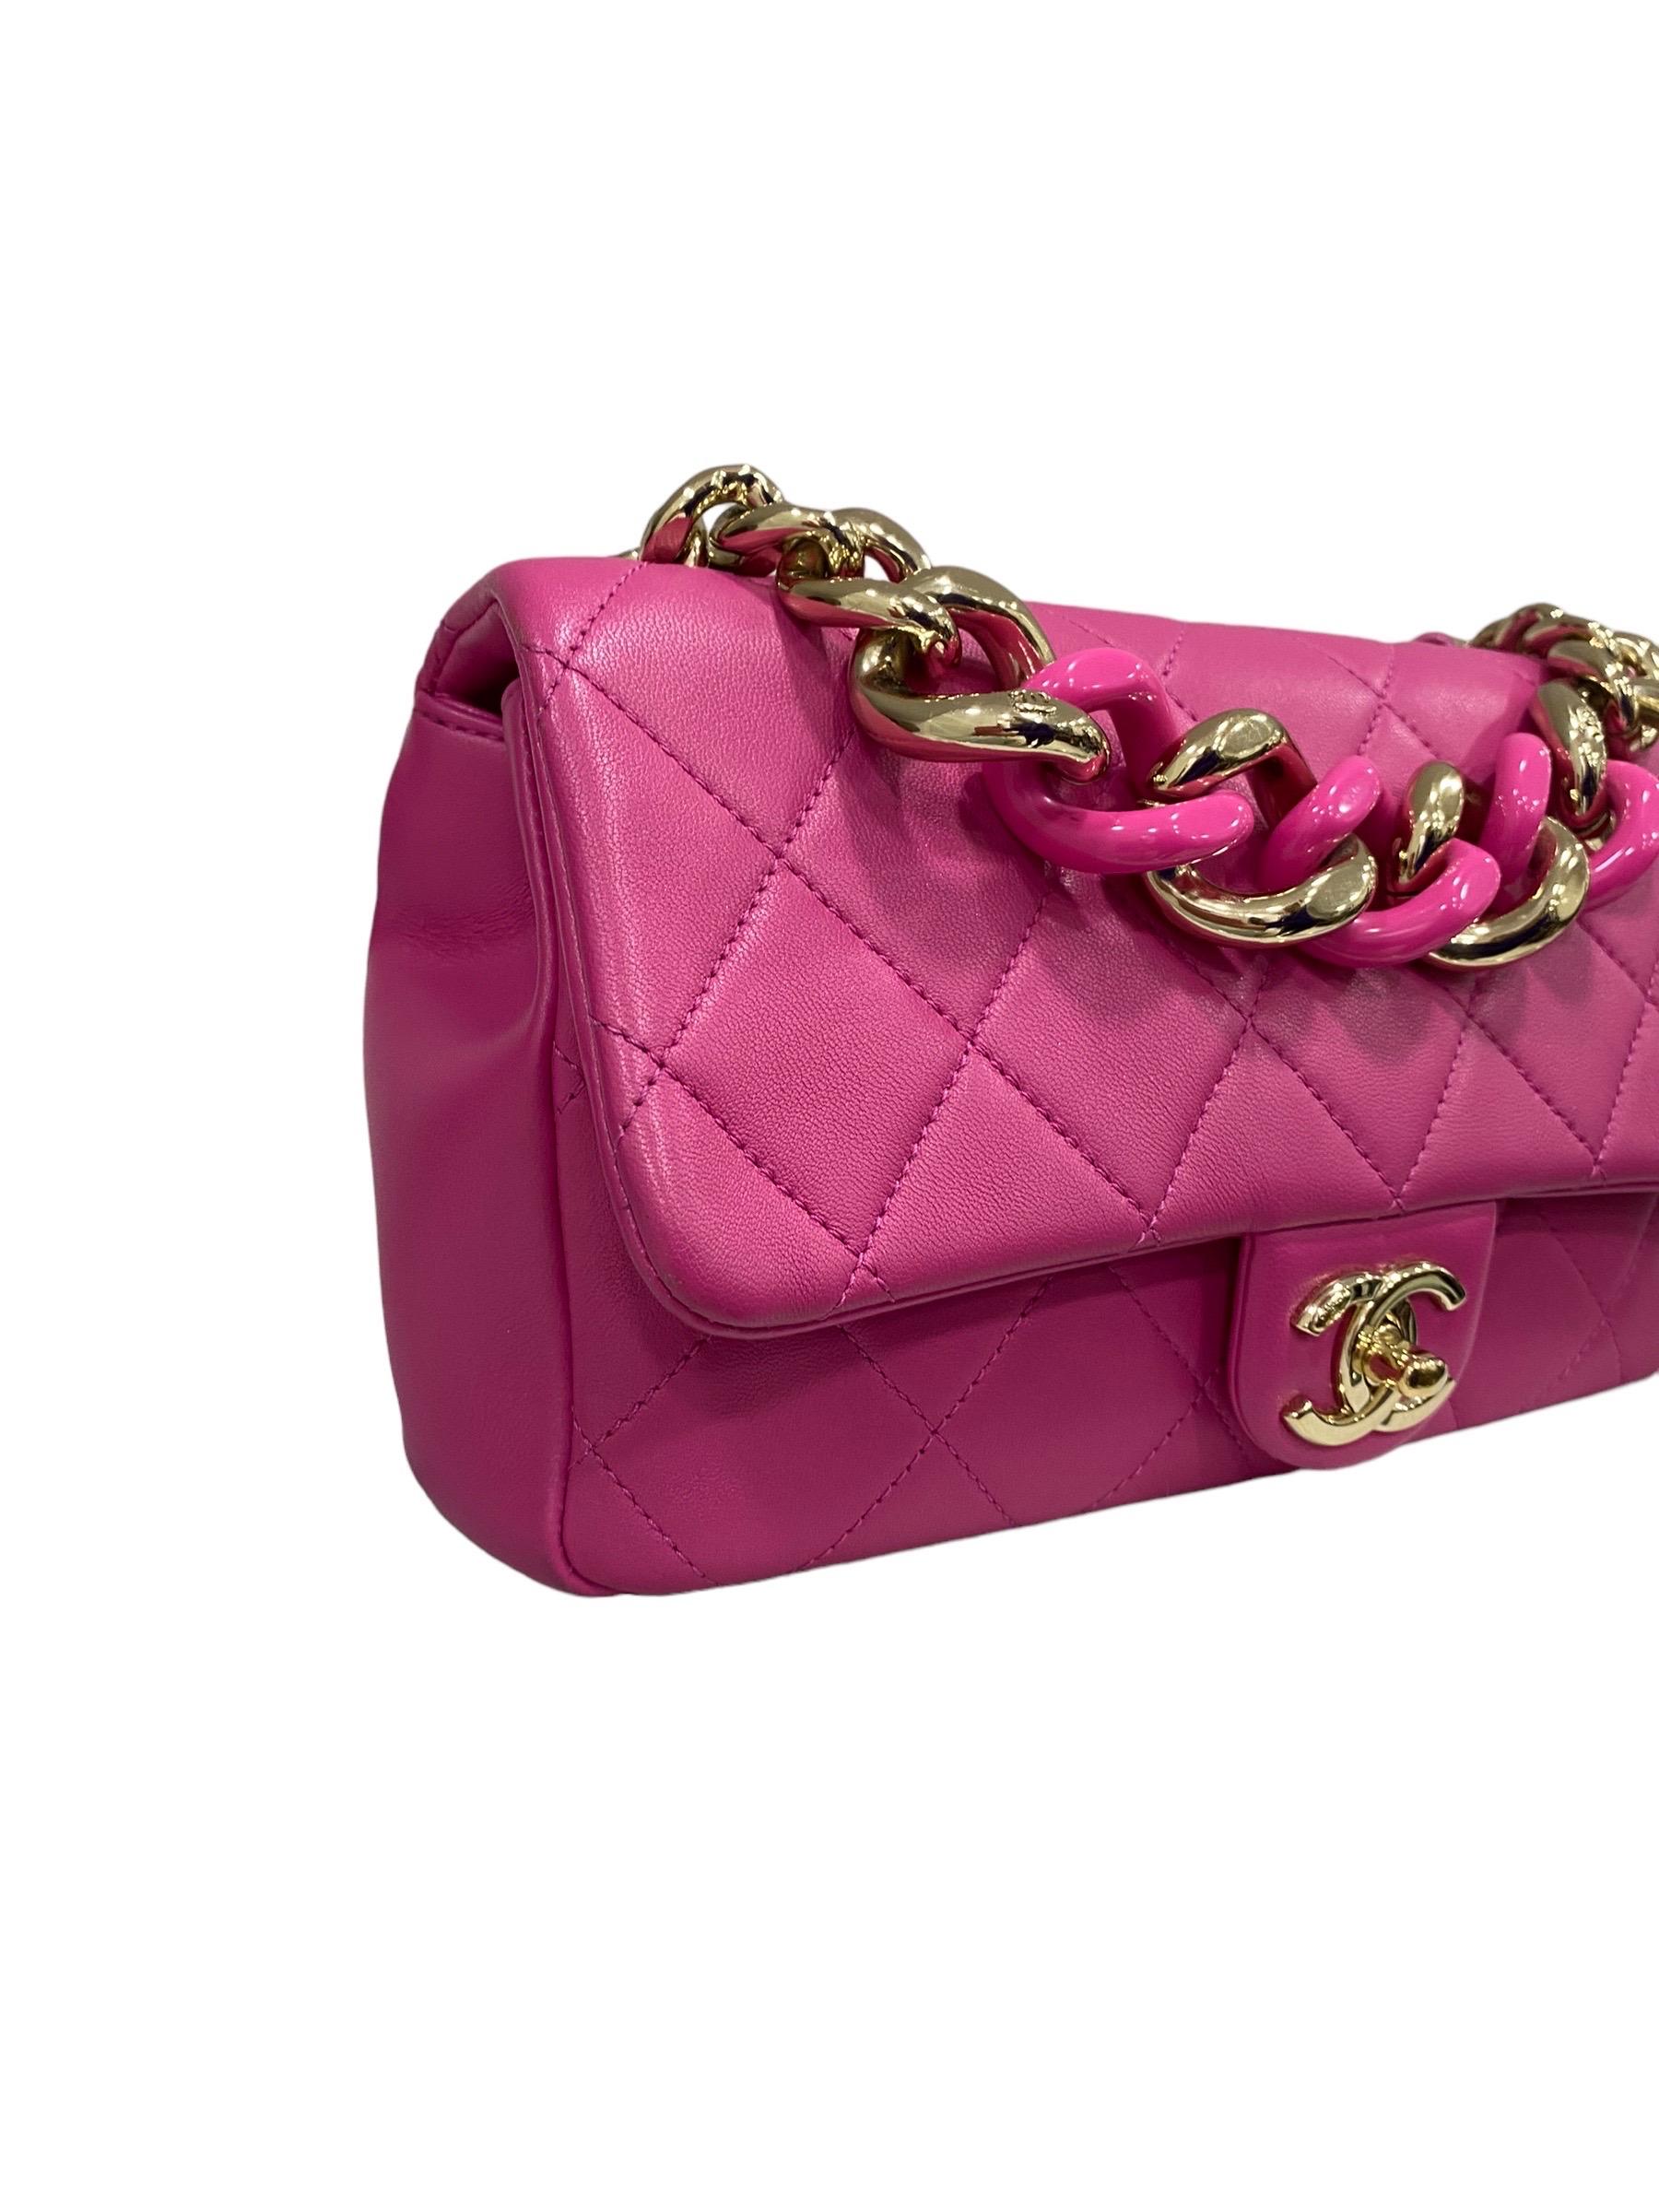 Signierte Tasche von Chanel, Linie 19, aus rosa Glattleder mit goldenen Beschlägen. Die Tasche ist mit einer Klappe mit ineinandergreifendem CC-Logo-Verschluss ausgestattet, innen mit grauem Stoff gefüttert, recht geräumig. Ausgestattet mit einem